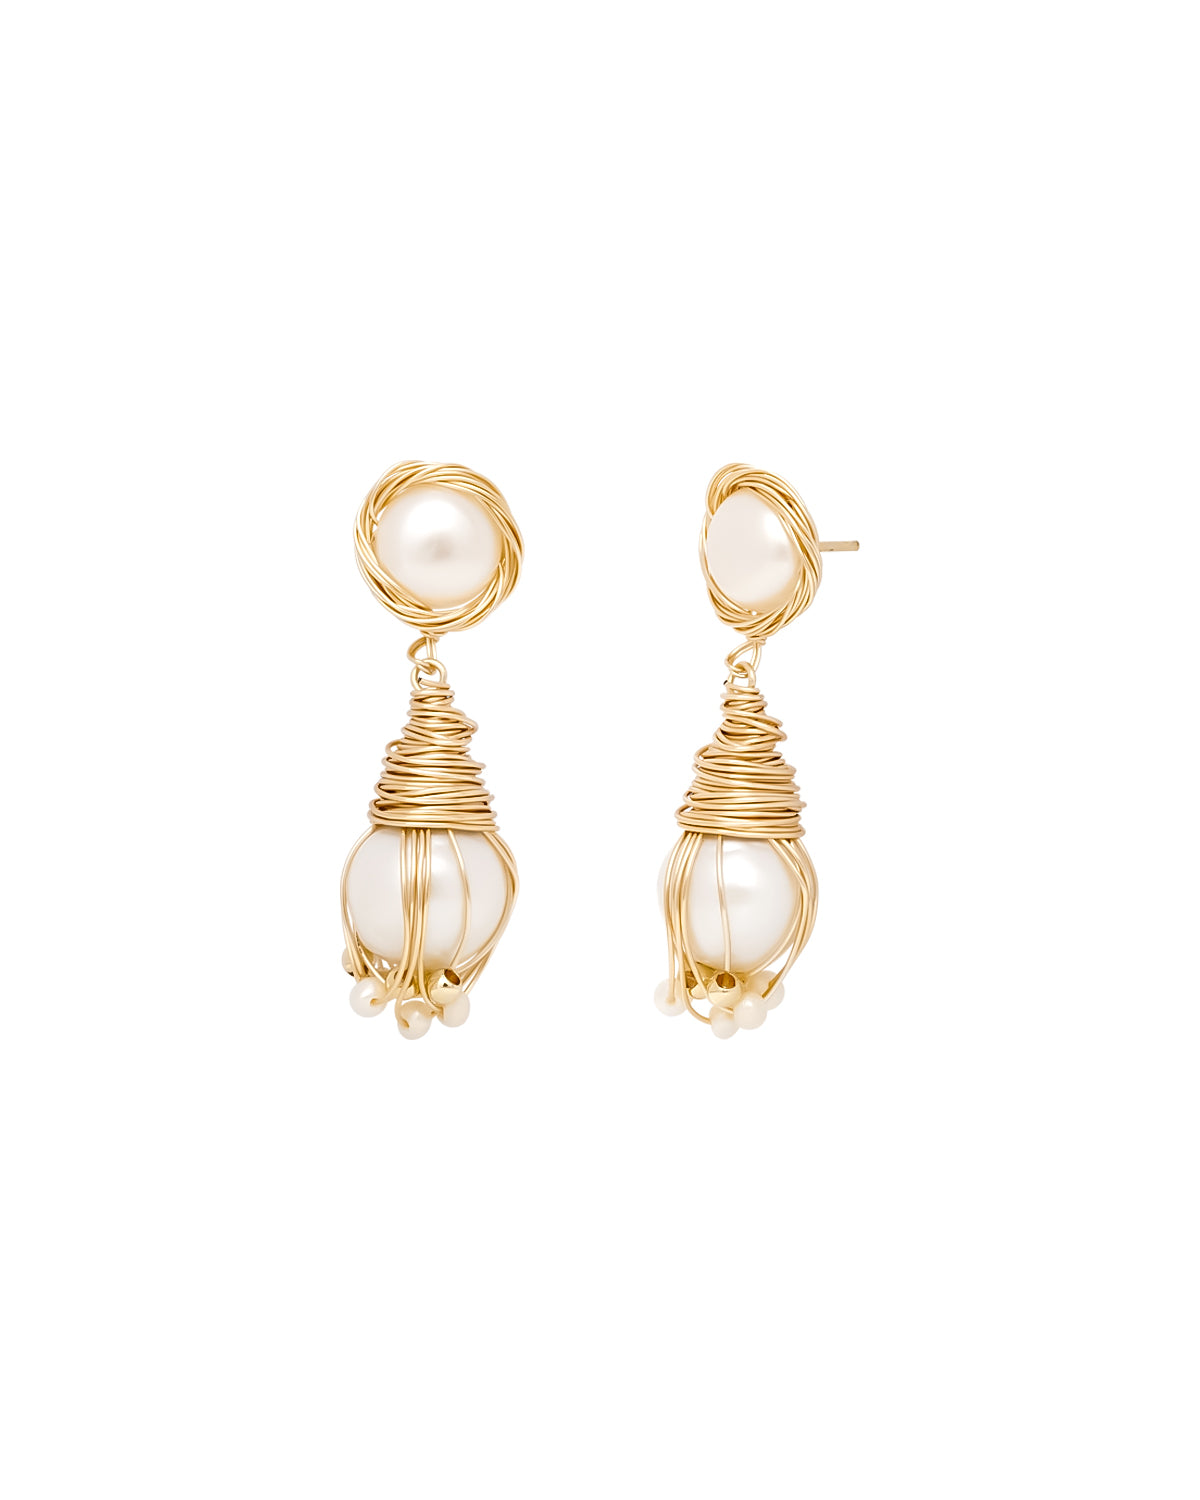 20-21mm White Freshwater Pearl Twine Drop Earrings